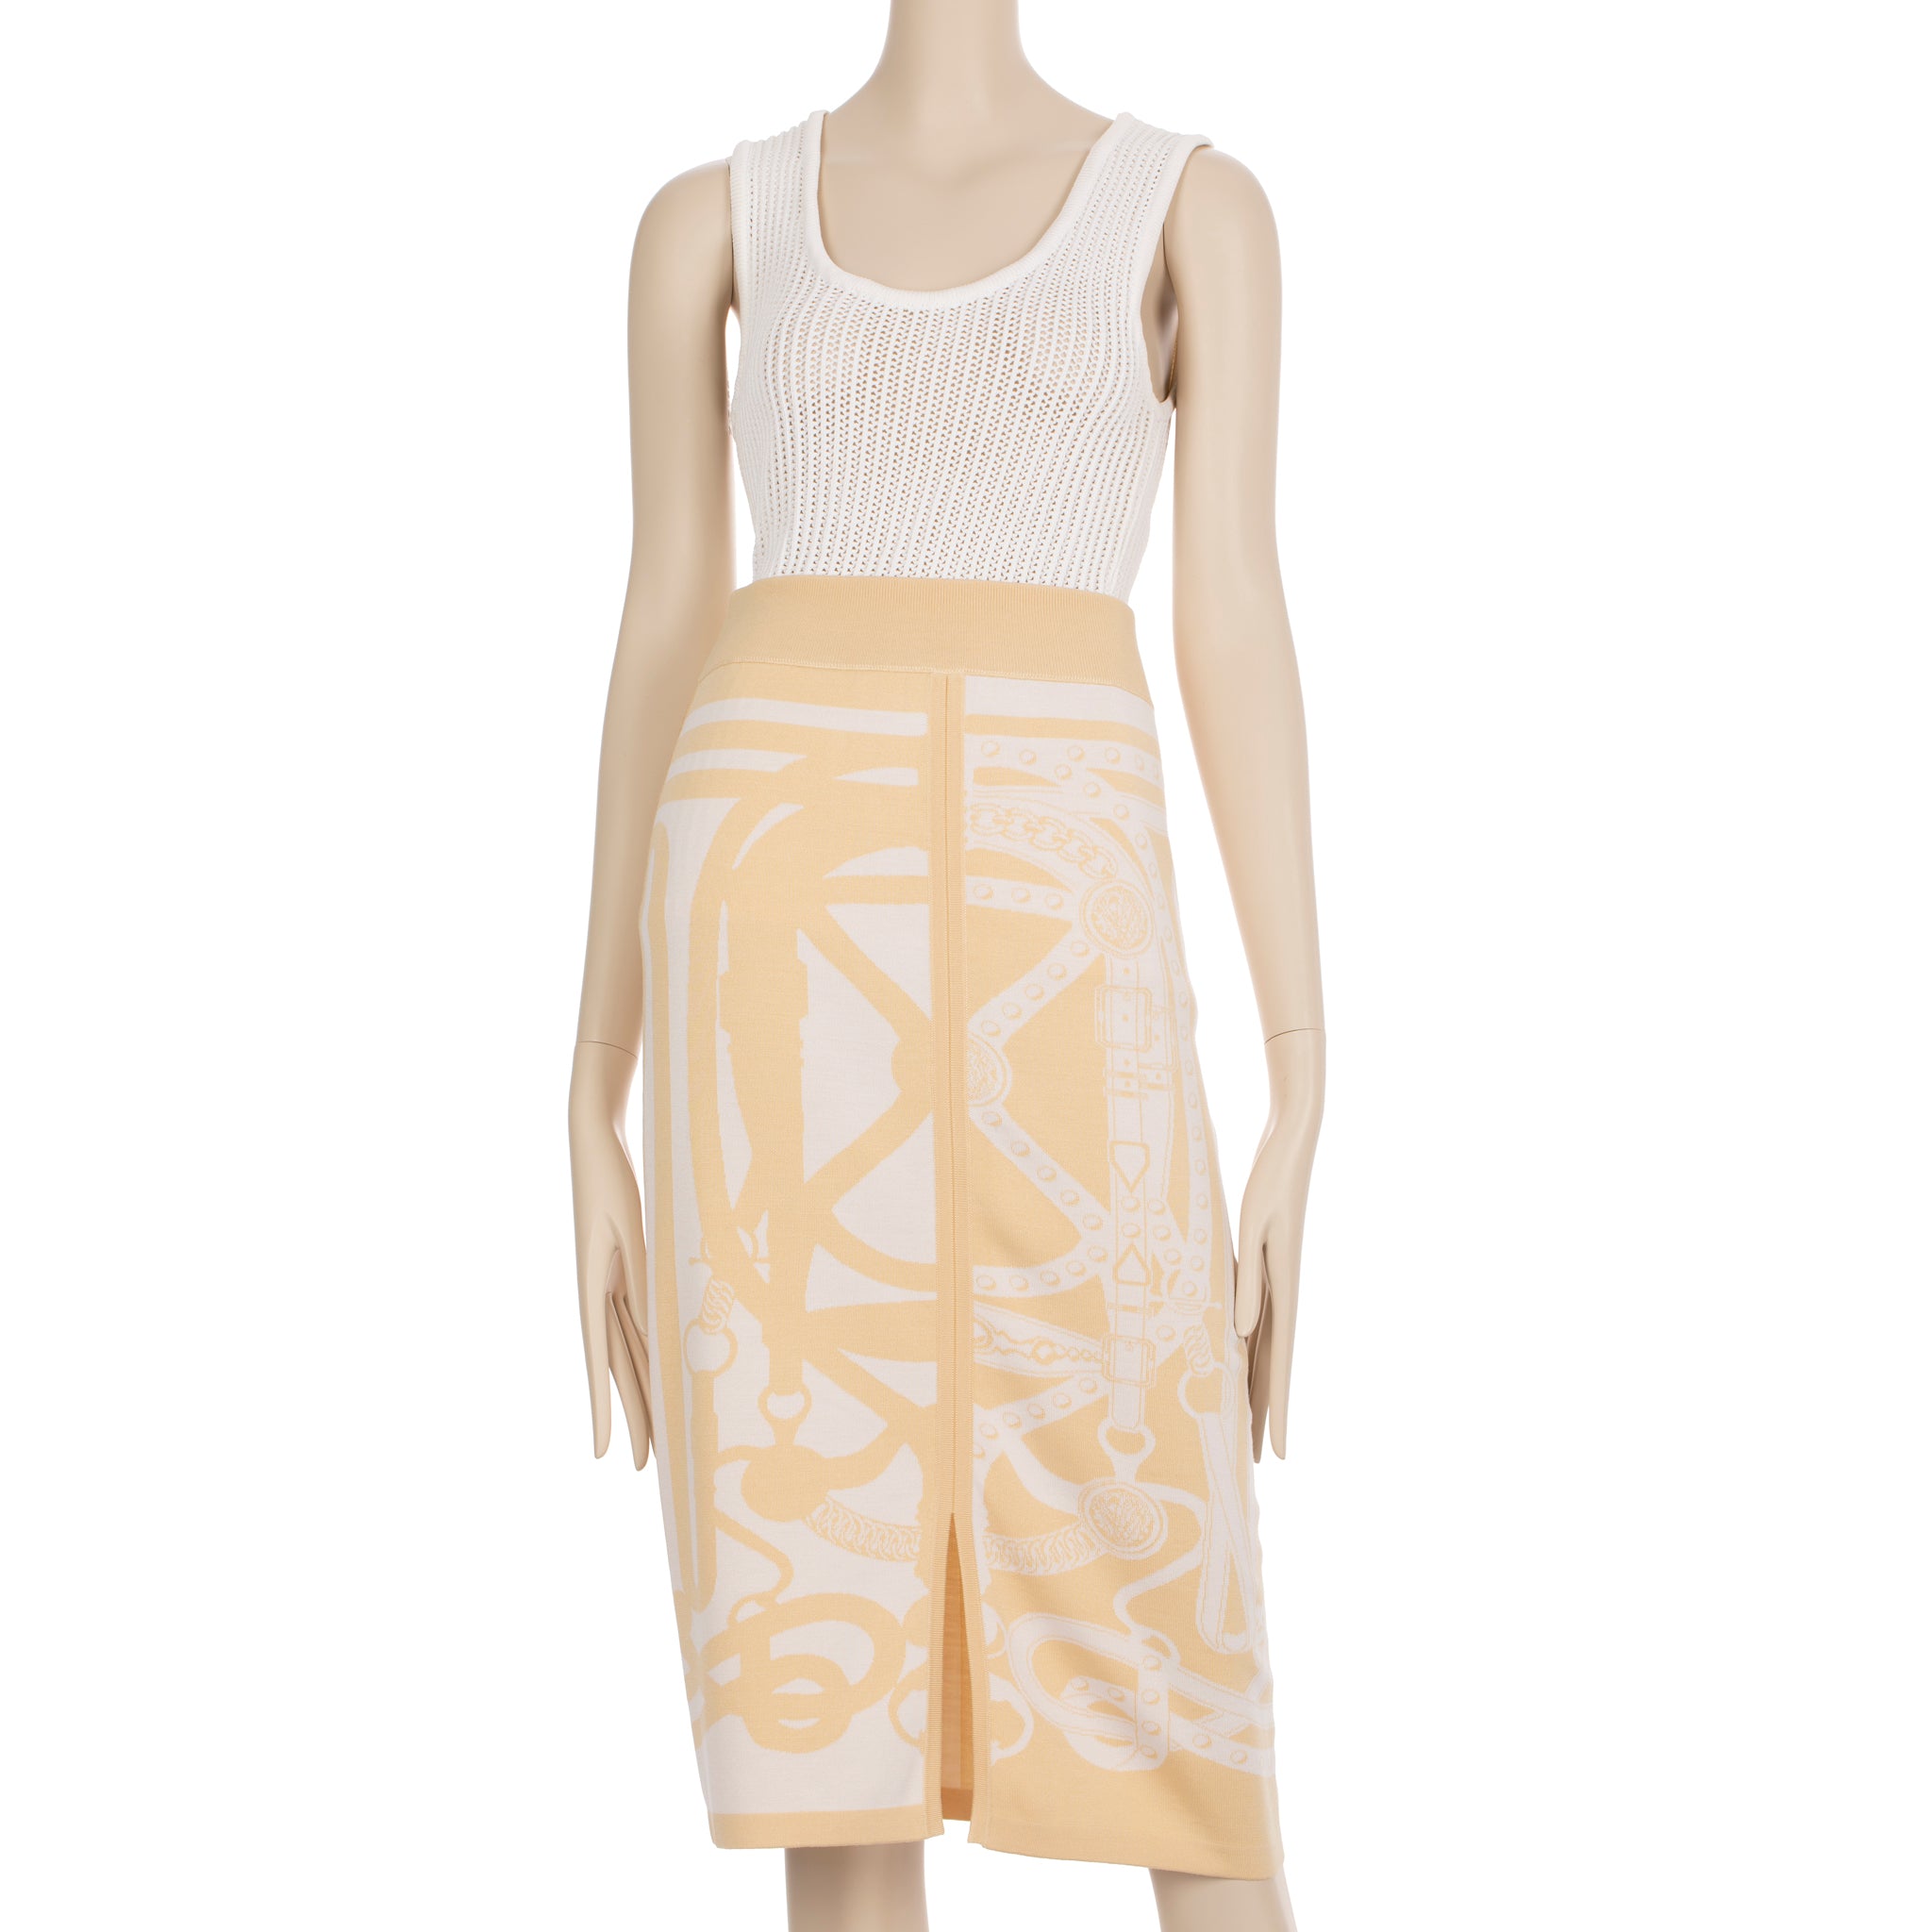 Hermes Long Skirt Knit Ivory & Beige 40 FR